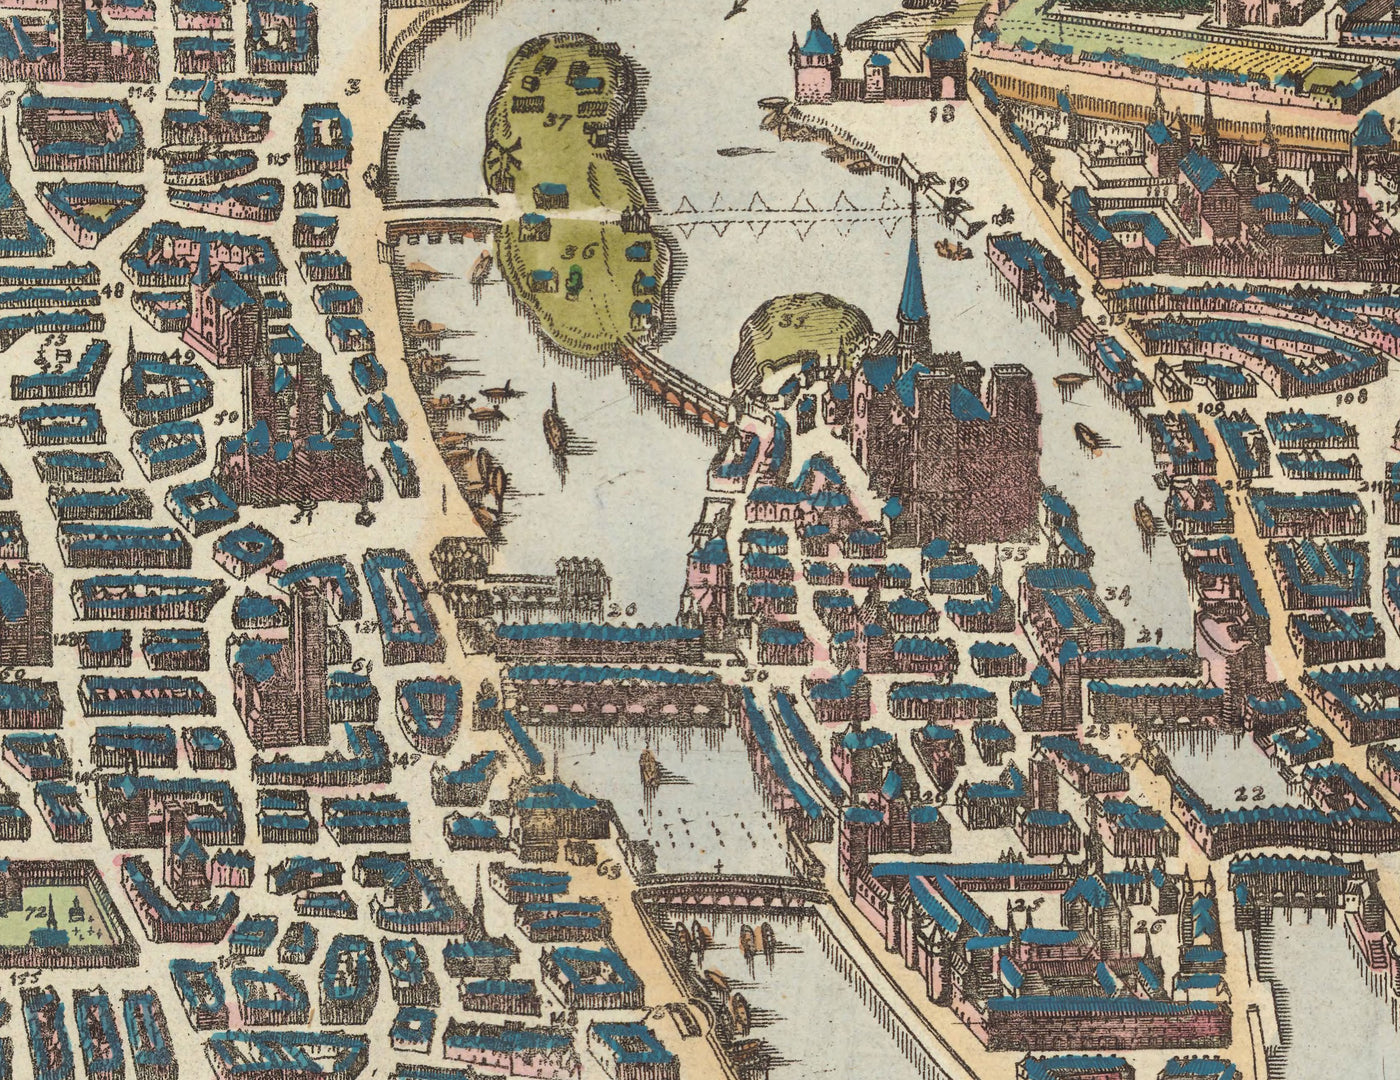 Old Map of Paris, 1655 by Caspar Merian - Ile Saint Louis and de la Cite, Pont Neuf, Seine, Notre Dame